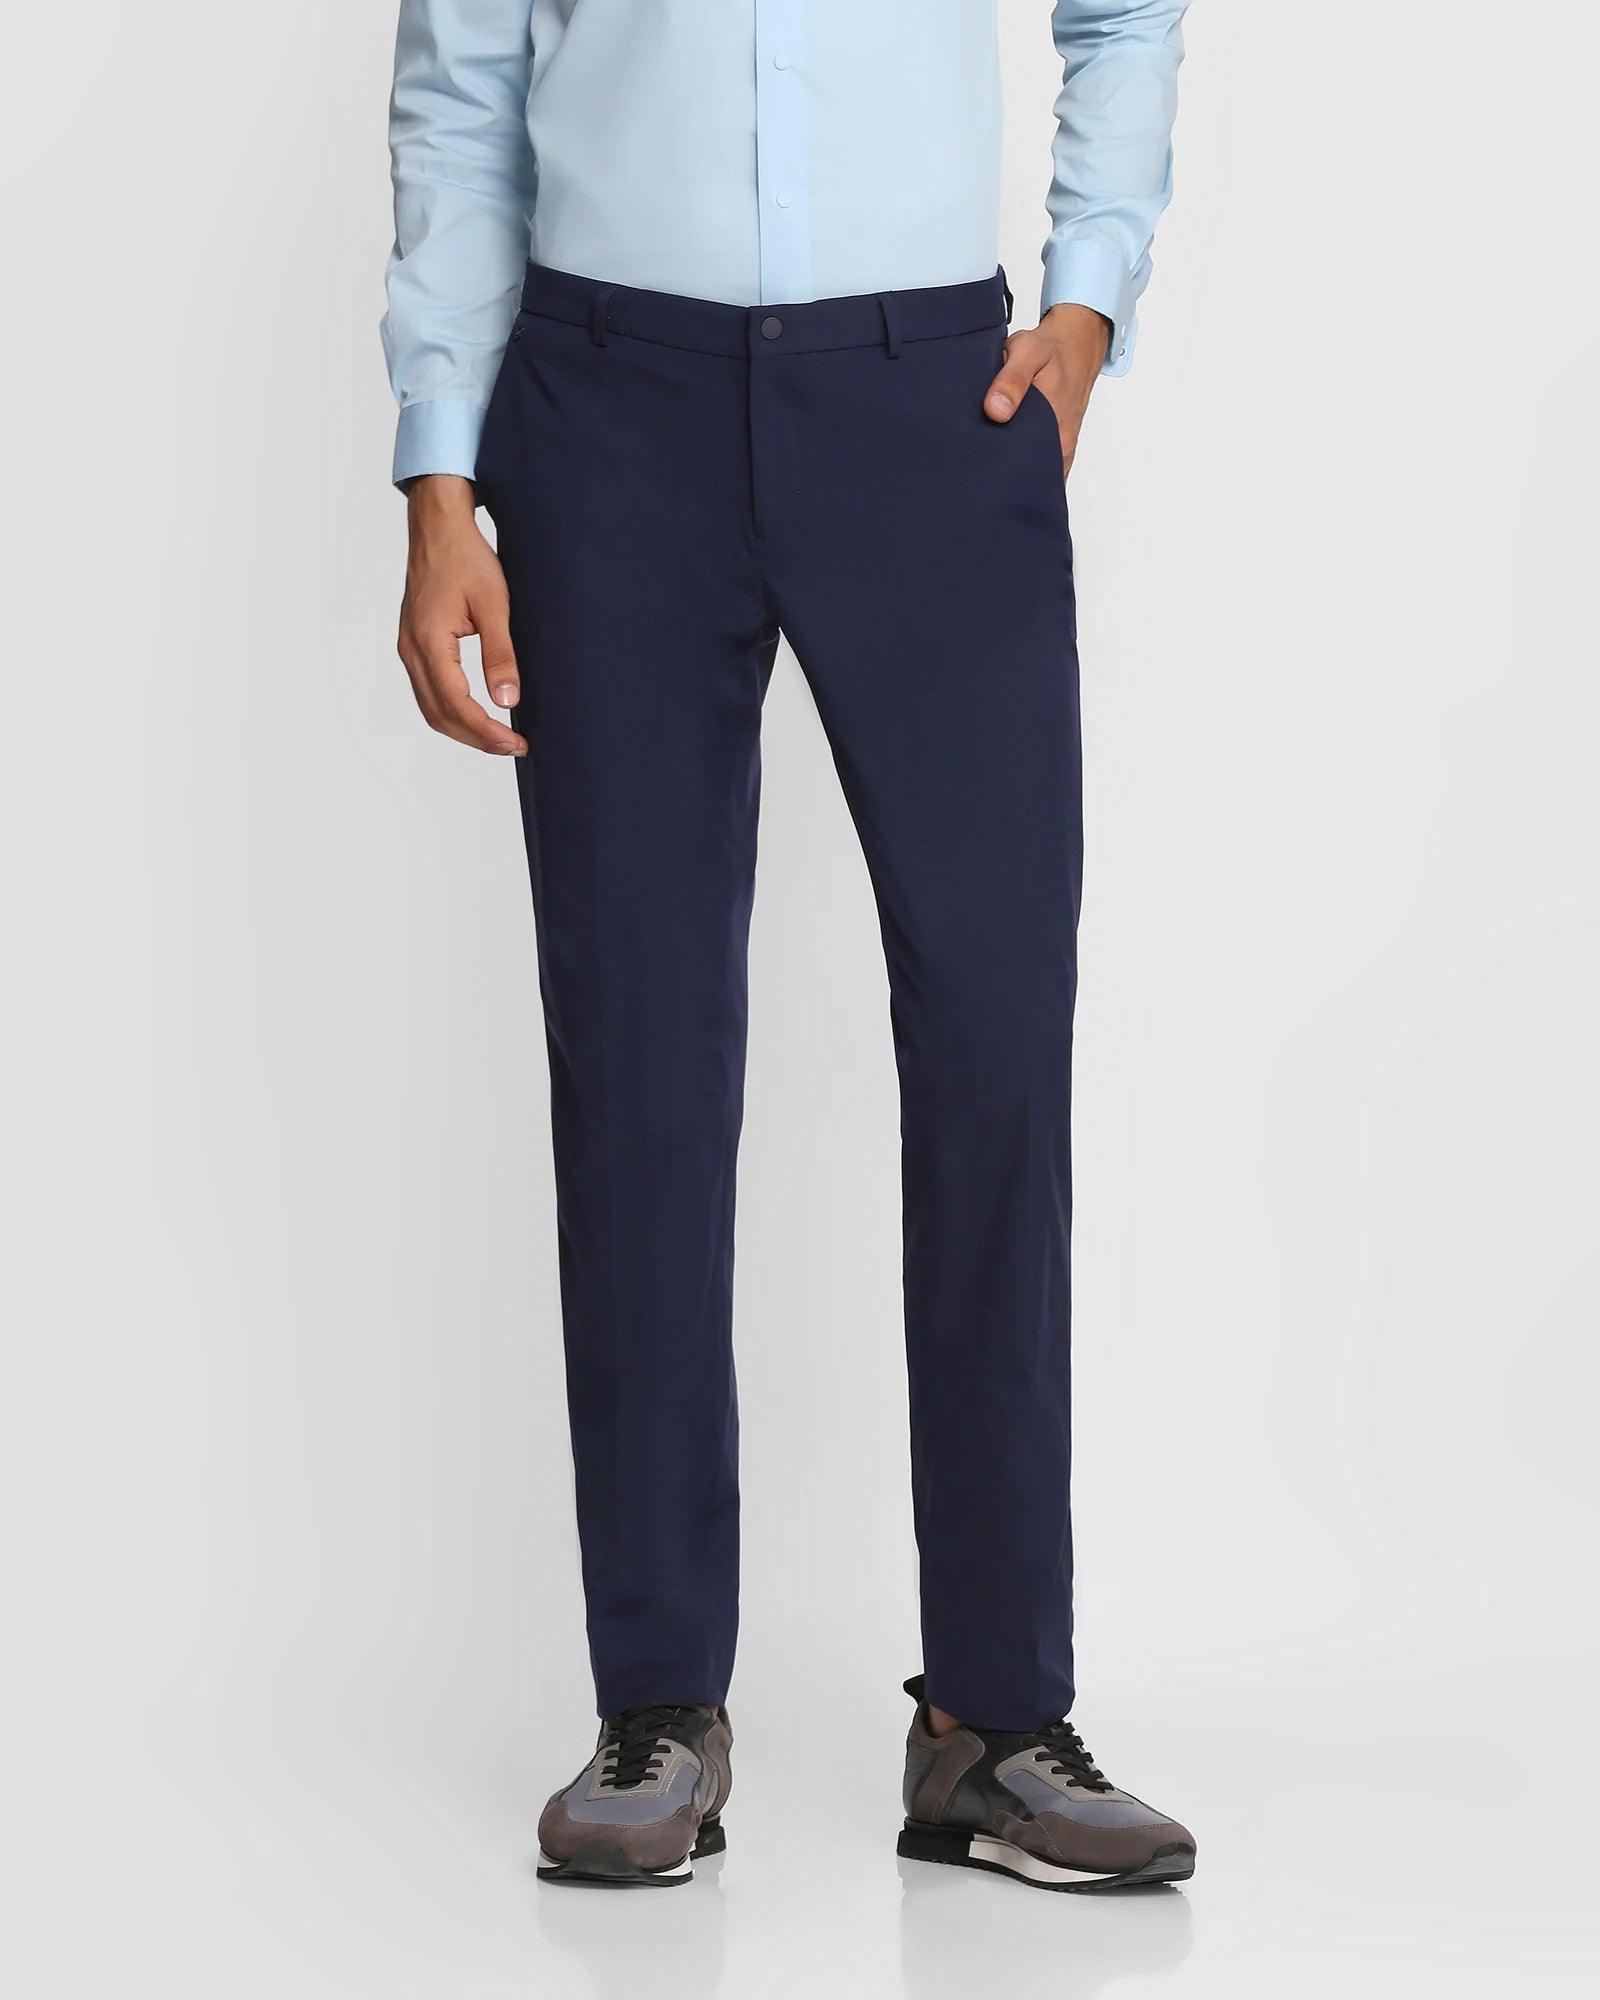 Big and Tall Essentials by DXL Men's Pleated Dress Pants, Navy, 56W x 34L -  Walmart.com